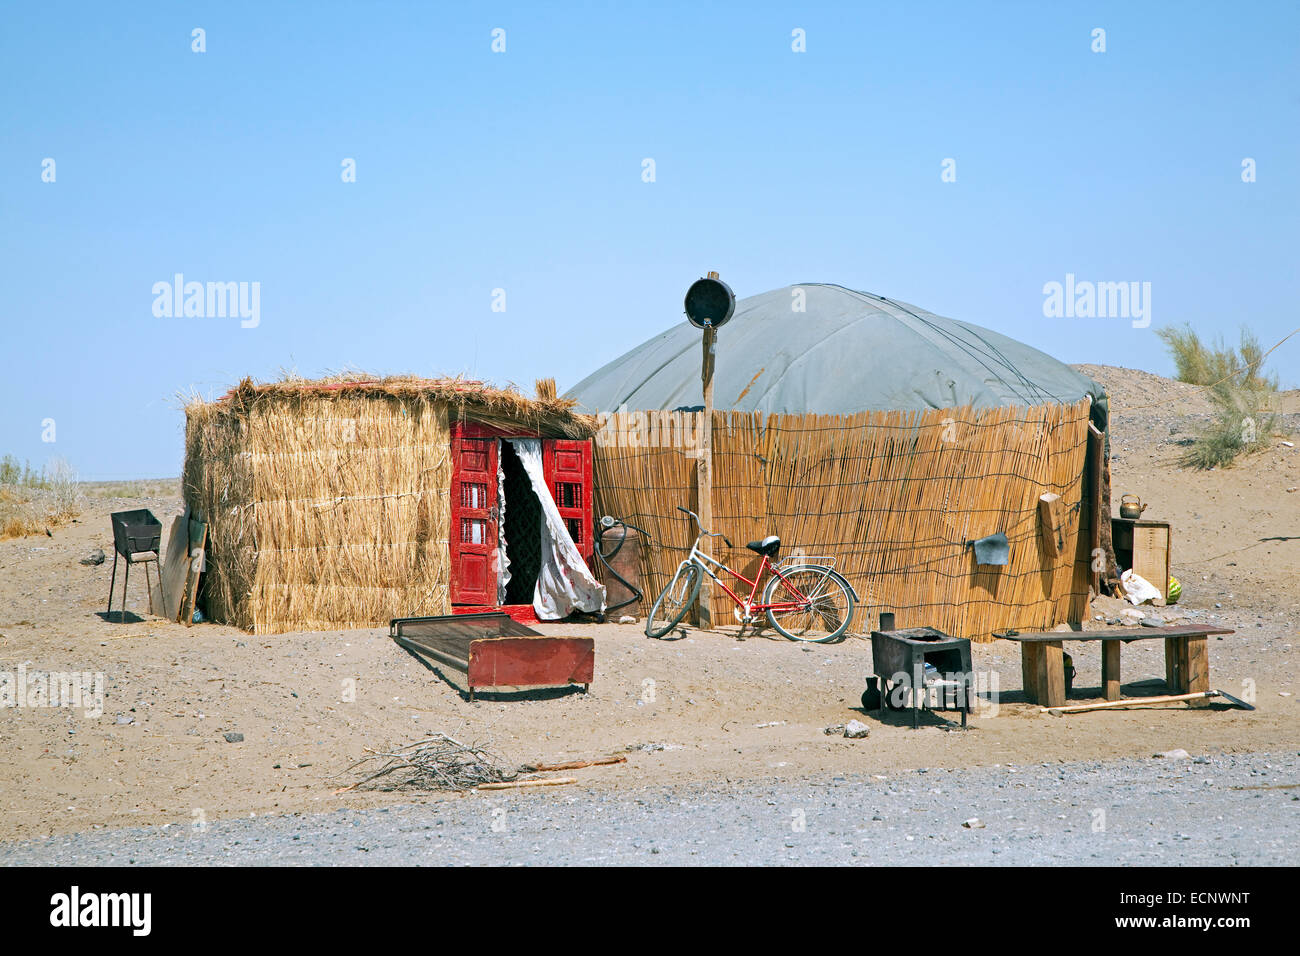 Yourte turkmène, portable, structure d'habitation utilisé traditionnellement par les nomades dans le désert de Karakoum, le Turkménistan Banque D'Images